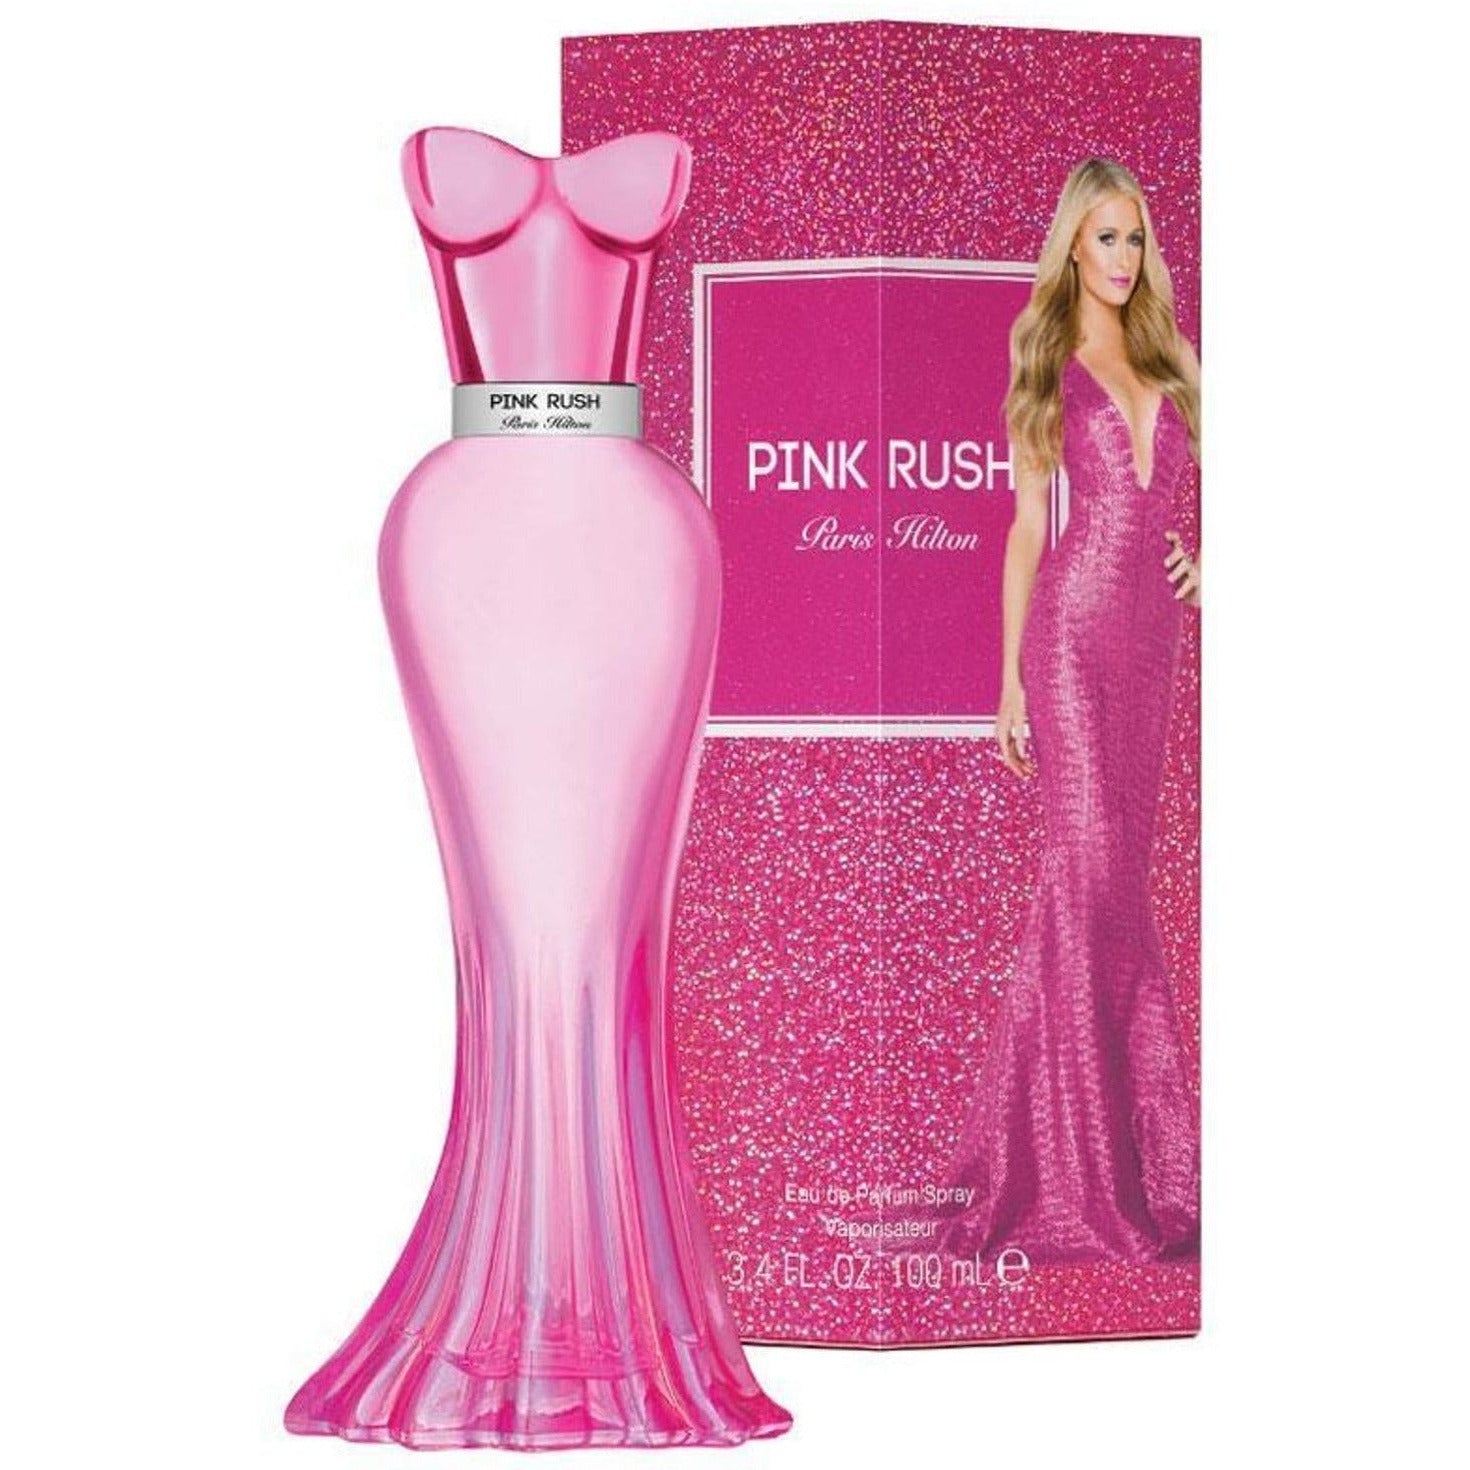 perfume pink rush para mujer precio